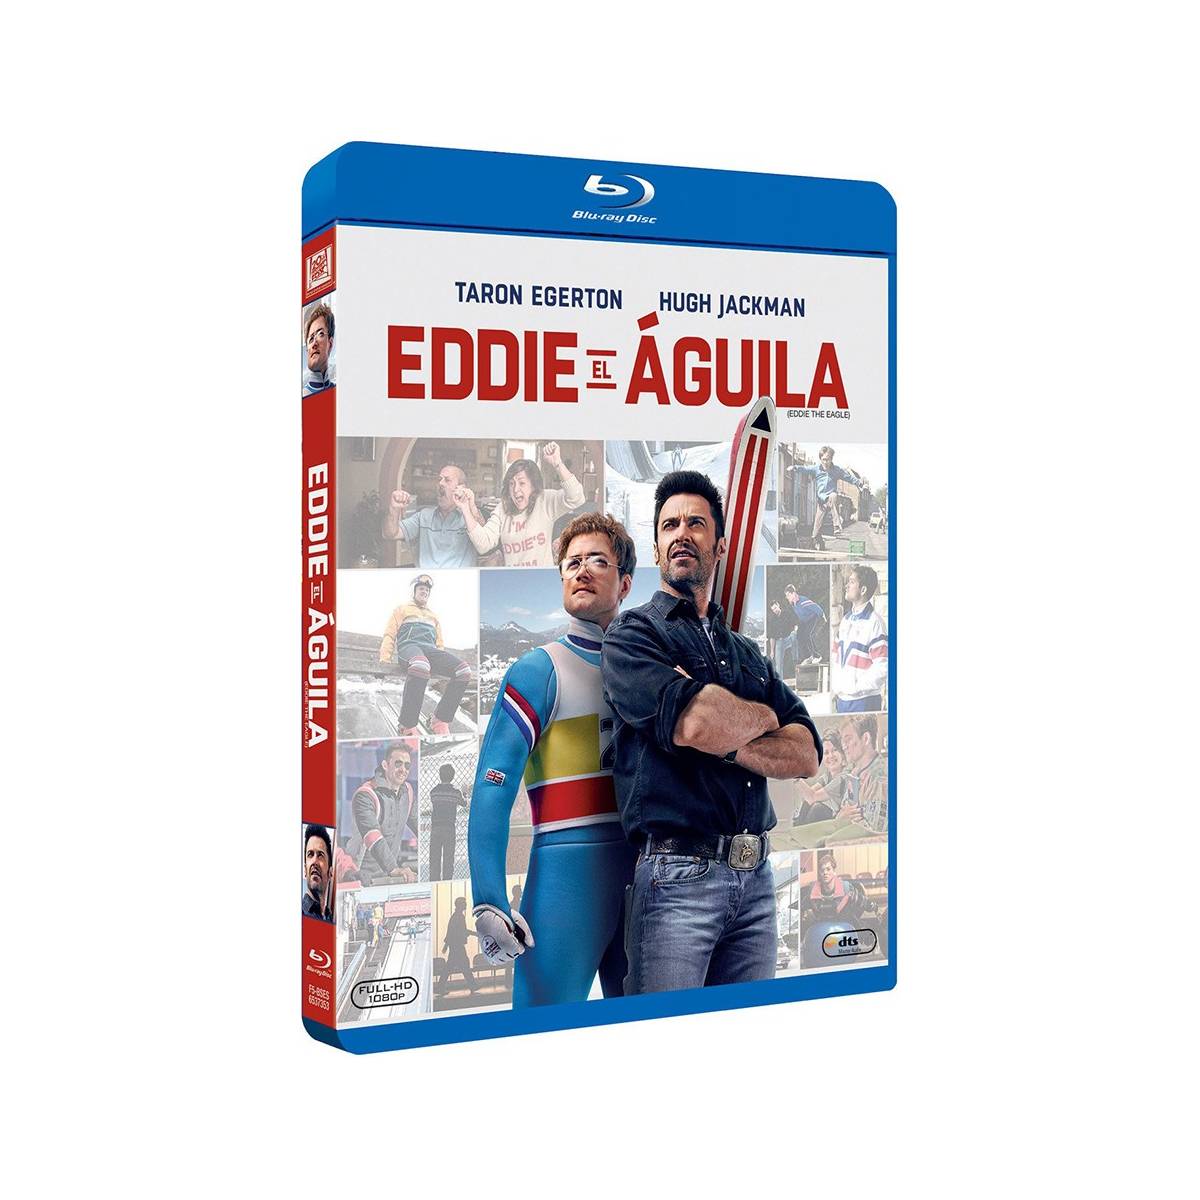 Eddie El Aguila (Blu-Ray) (Eddie The Eagle)